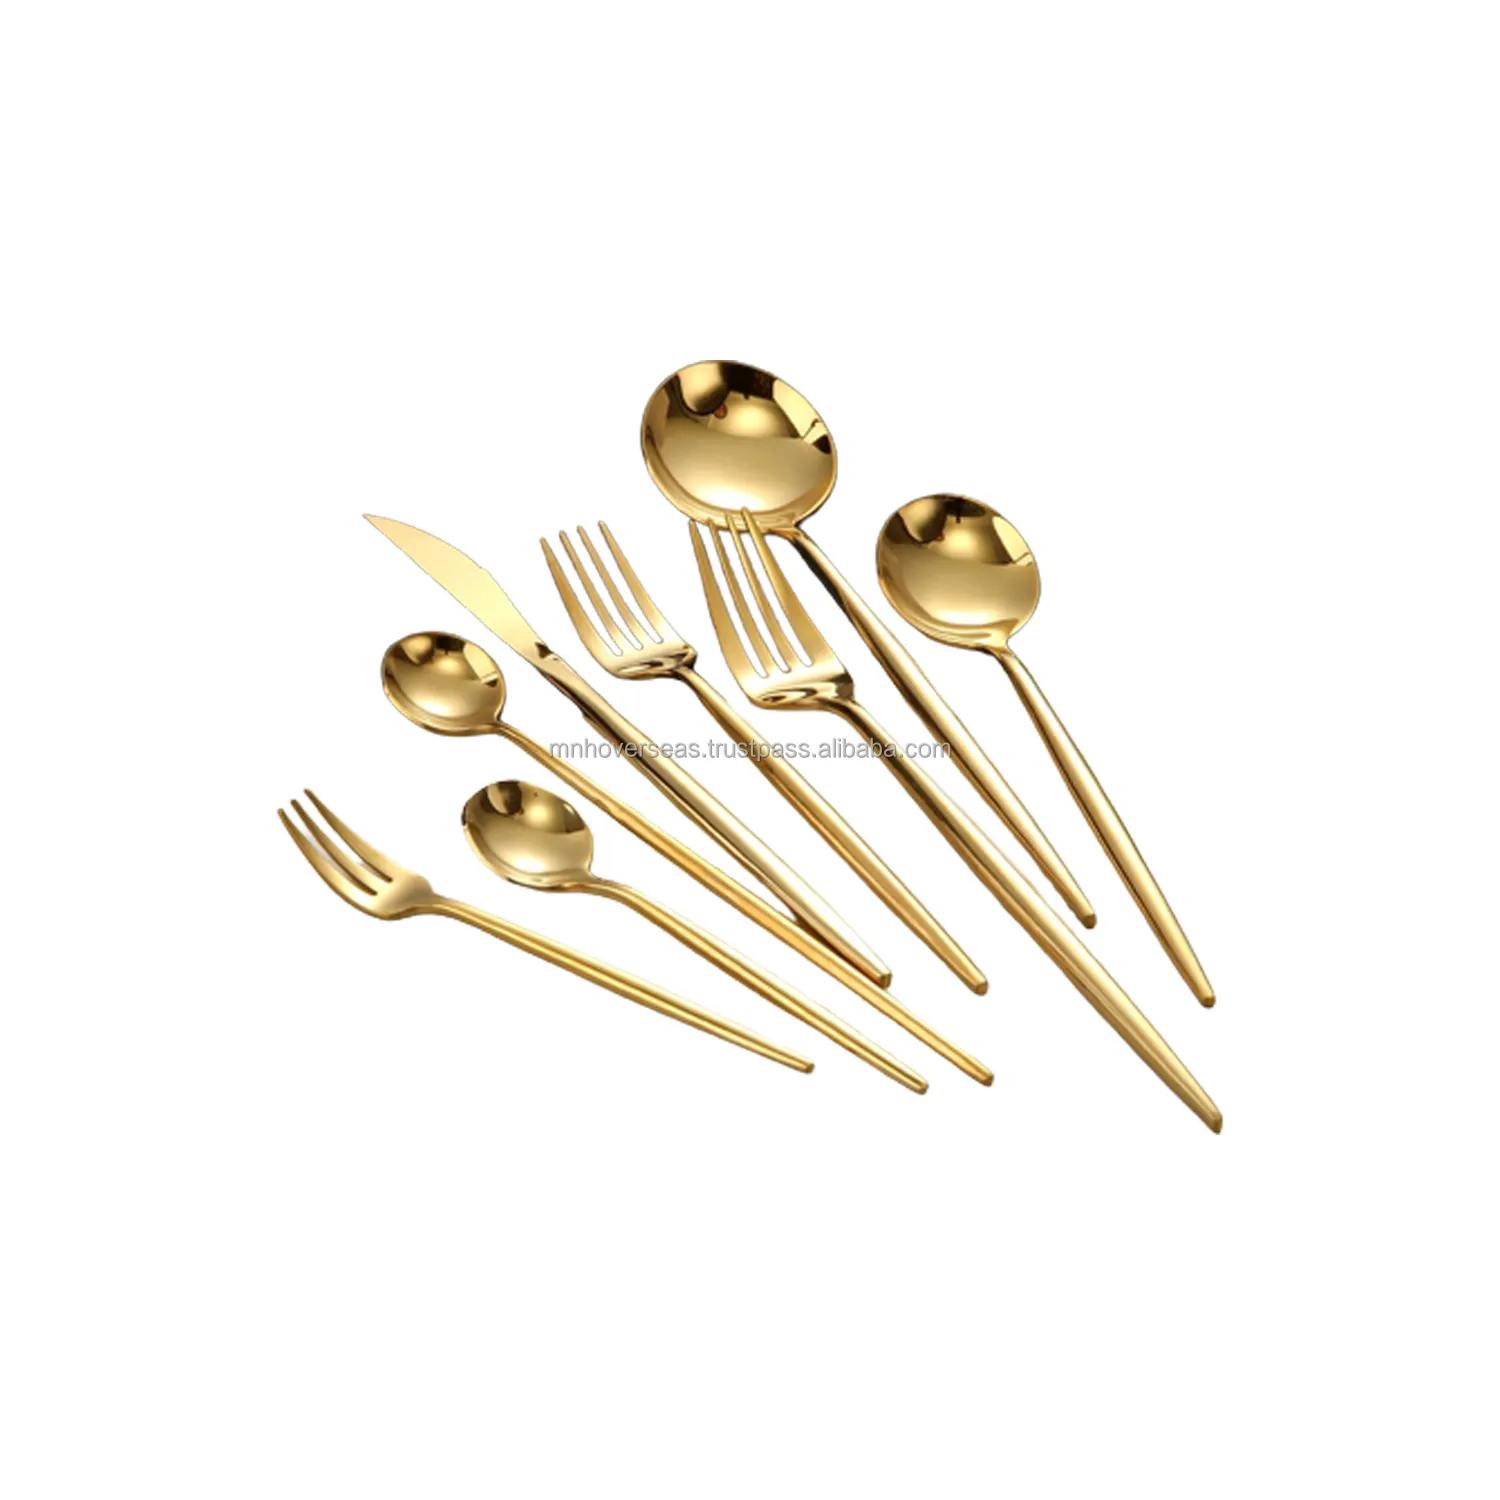 الحديثة تصميم الذهب مطلي العتيقة التشطيب تخدم ملعقة مجموعة أدوات المائدة للمنزل المطبخ الزفاف معدات التموين ملعقة كبيرة